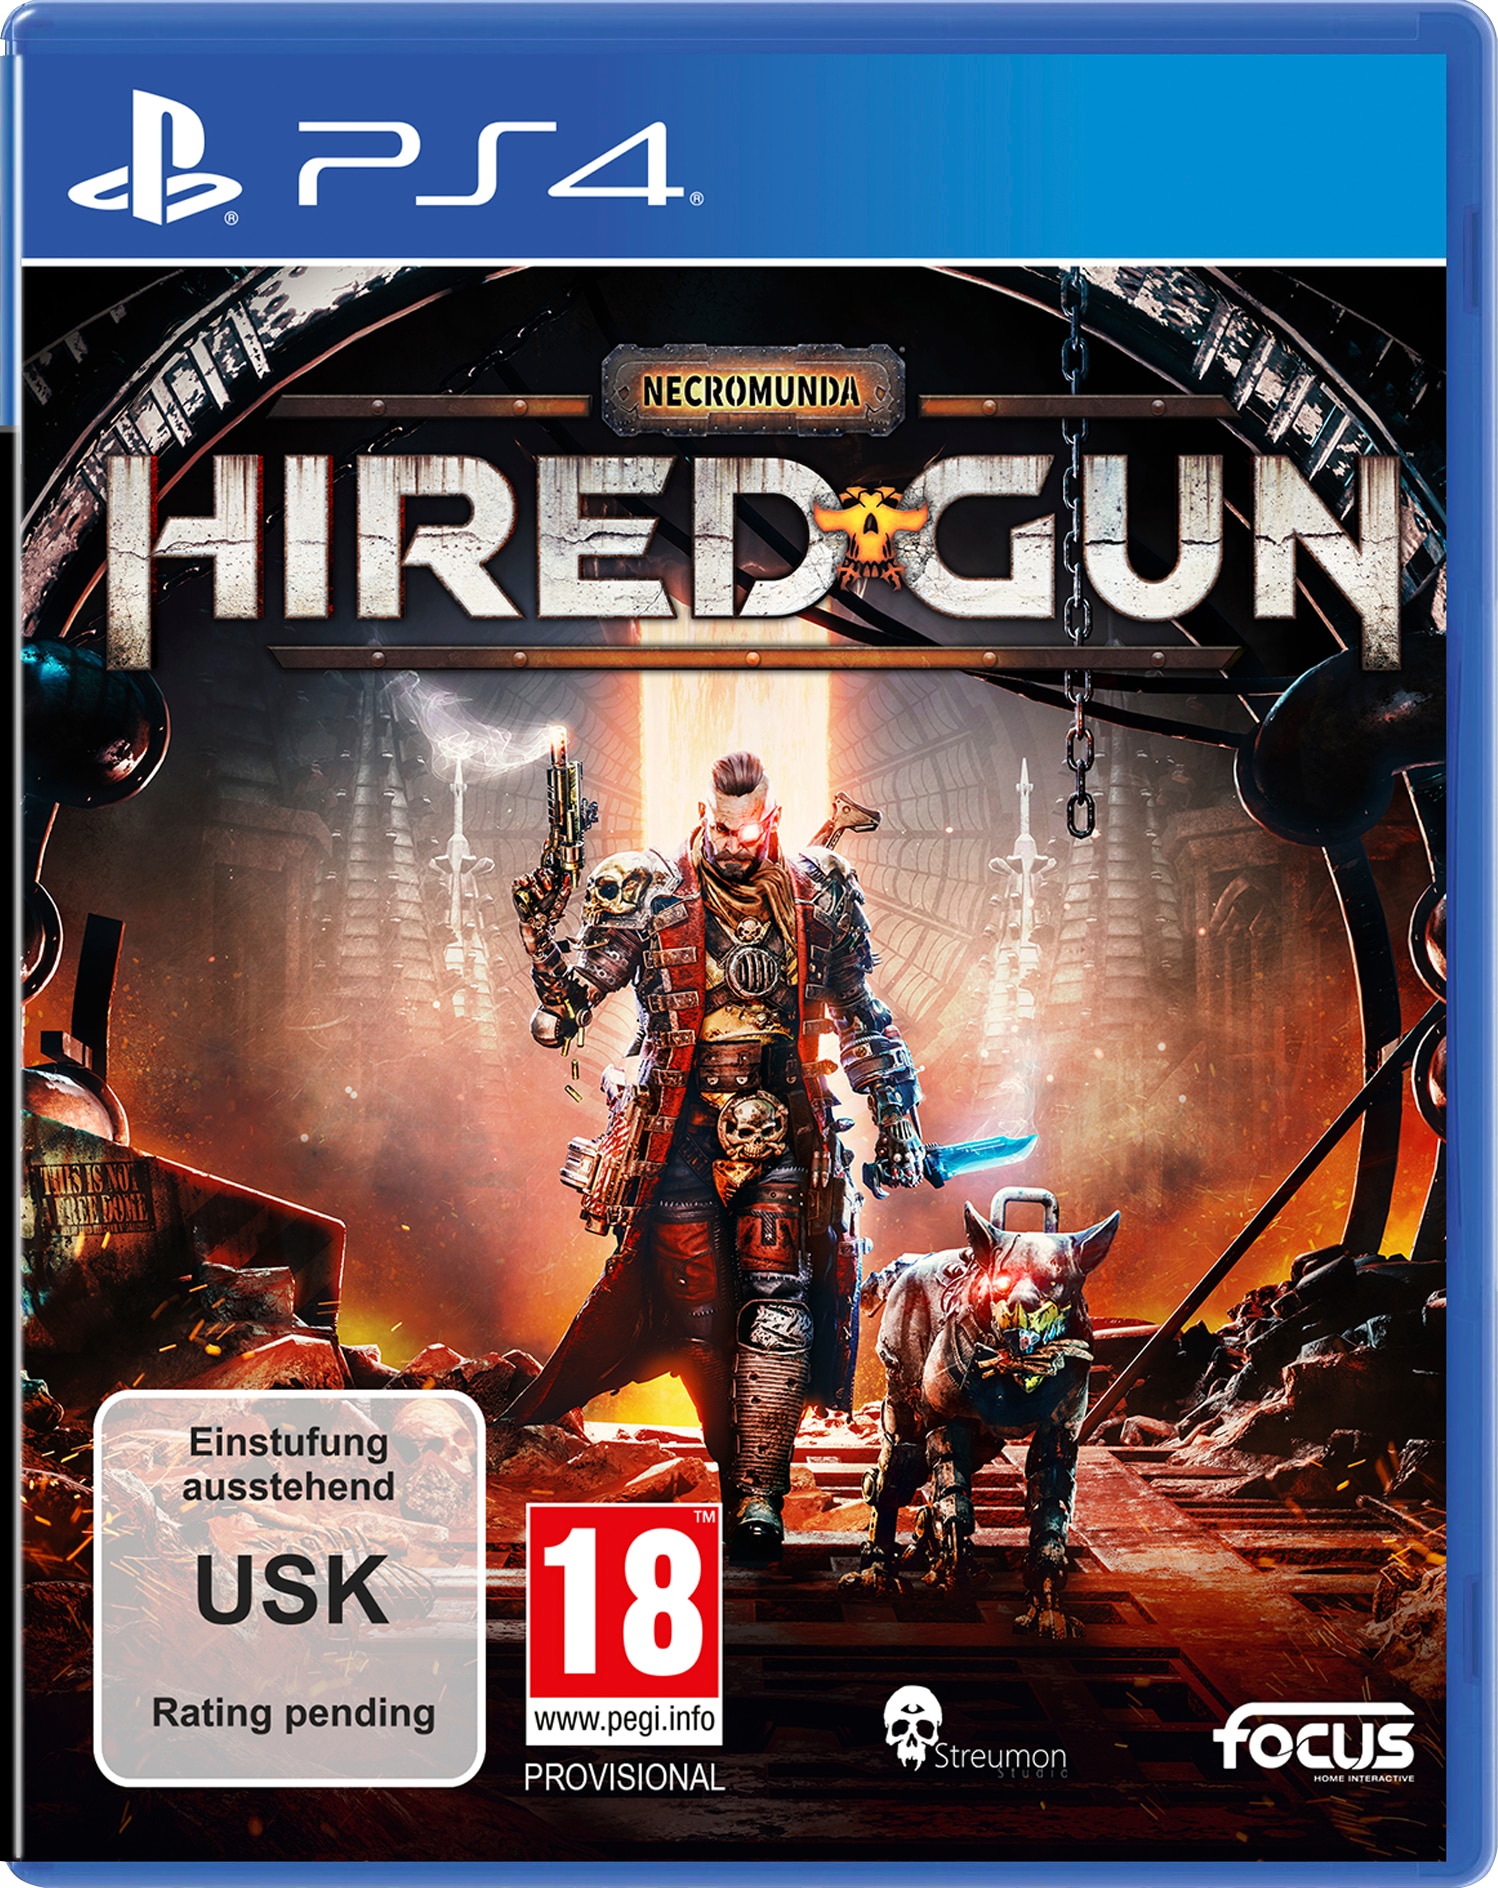 Focus Spielesoftware »Necromunda: Hired Gun«...